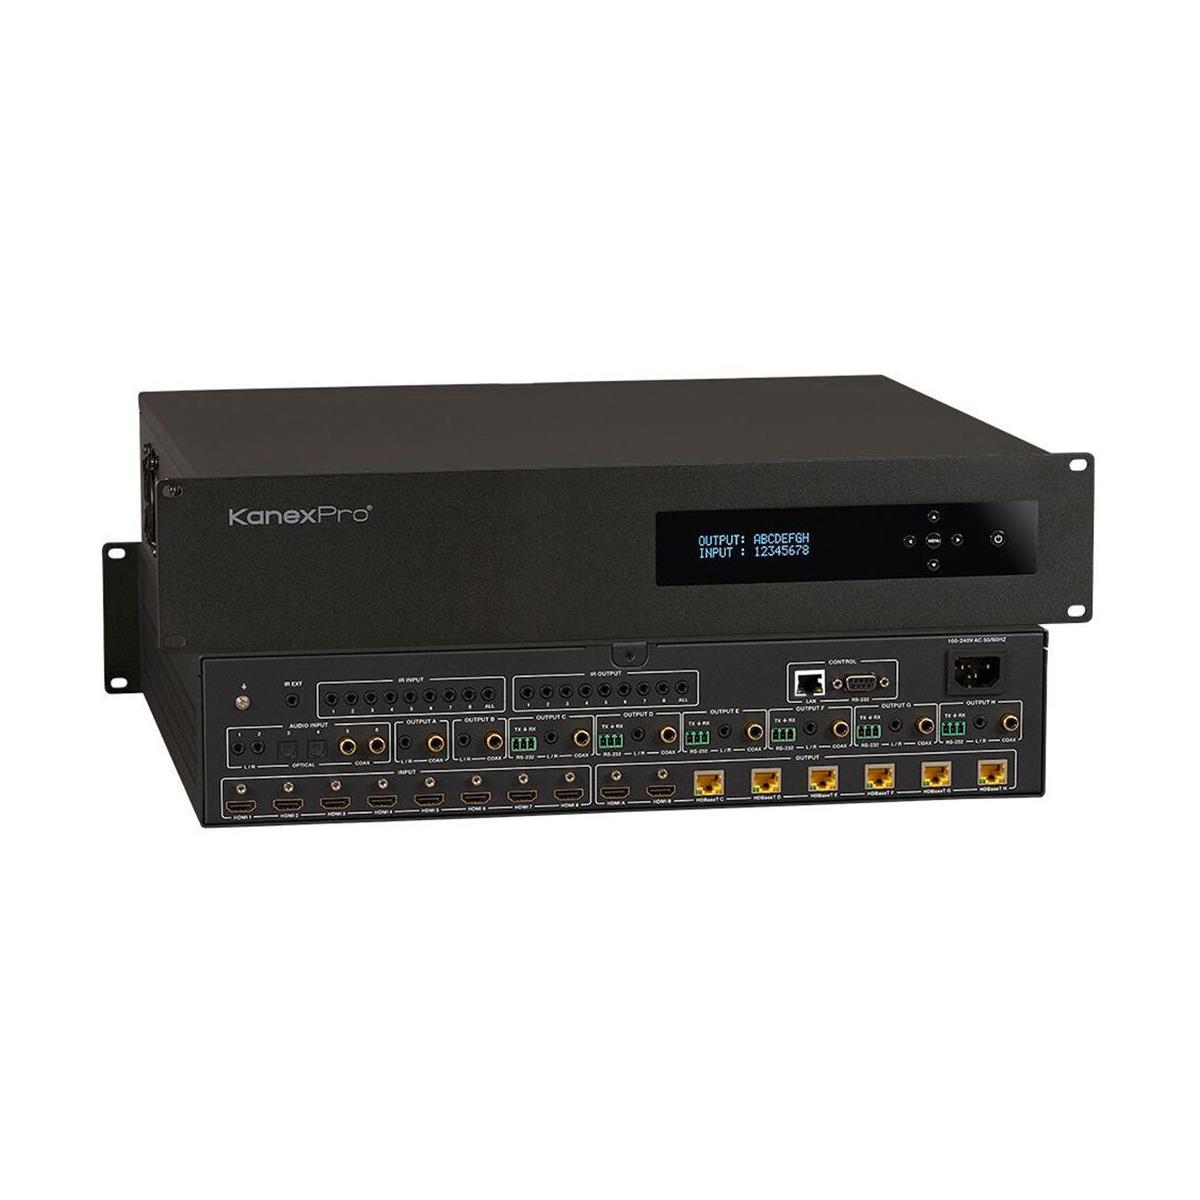 Image of KanexPro MX-HDBT8X818G 4K/60 HDBaseT 8x8 Matrix Switcher with Audio Matrix